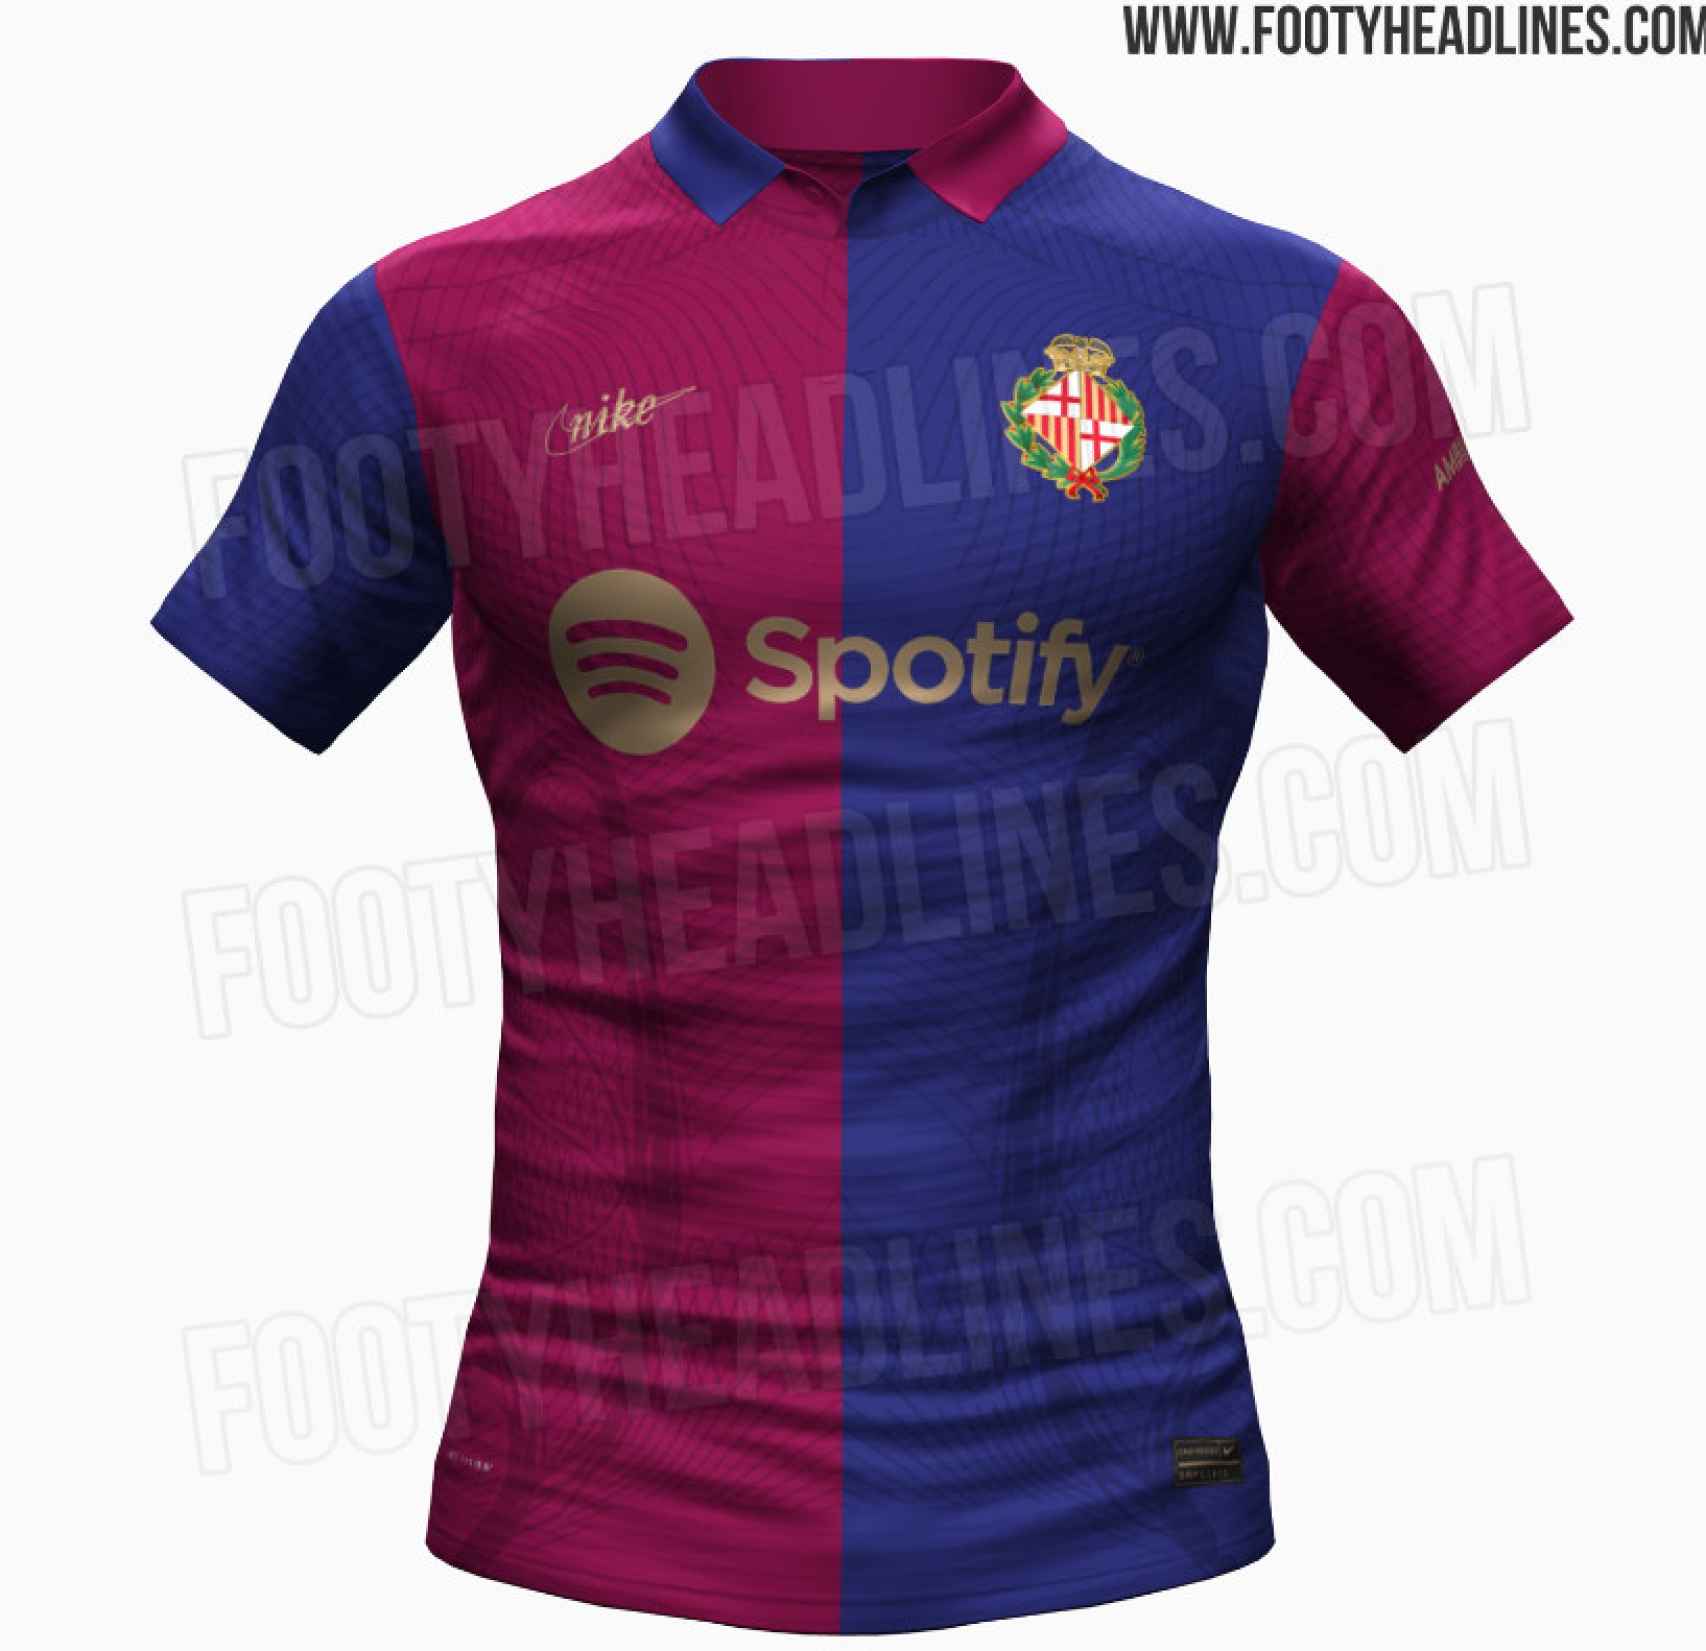 Así sería la nueva camiseta y el logo del Barça para su 125